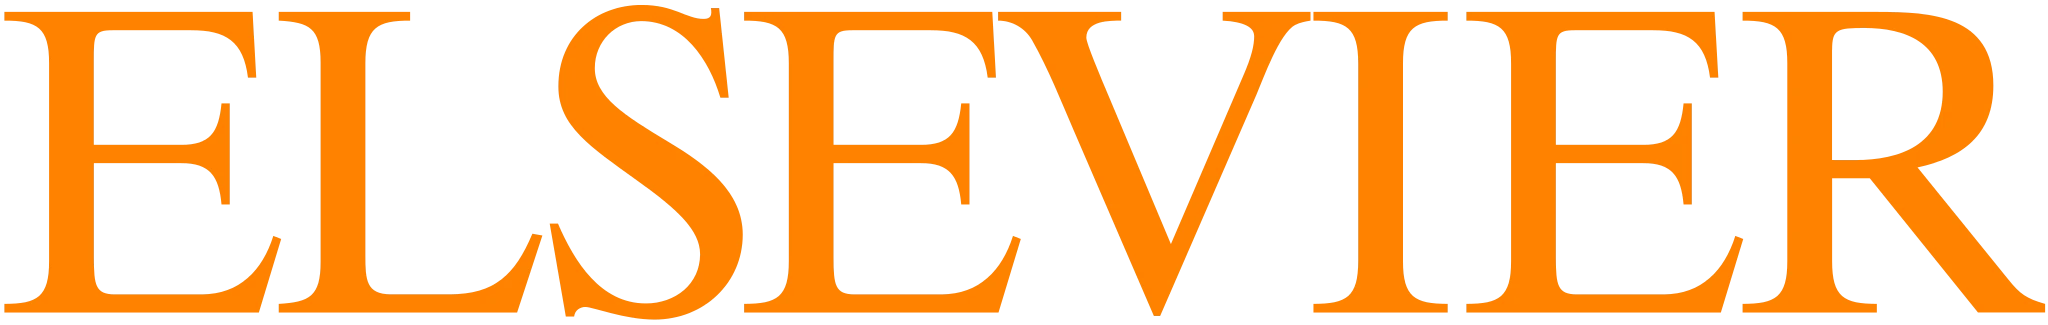 Elsevier v3